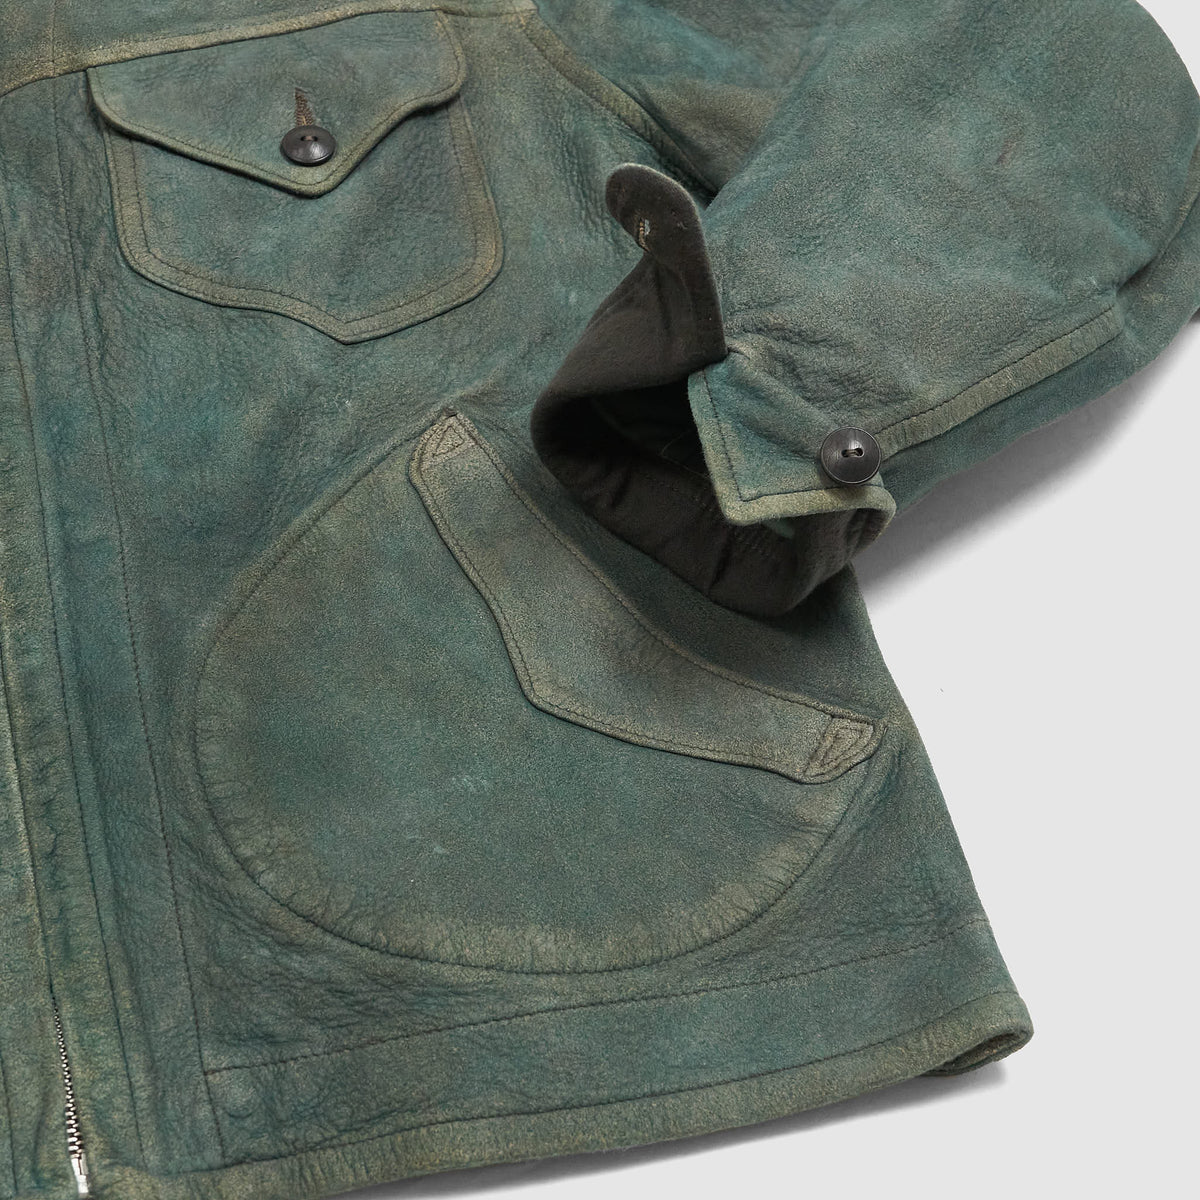 Double RL Indigo Dyed Unlined Soft Leatherjacket